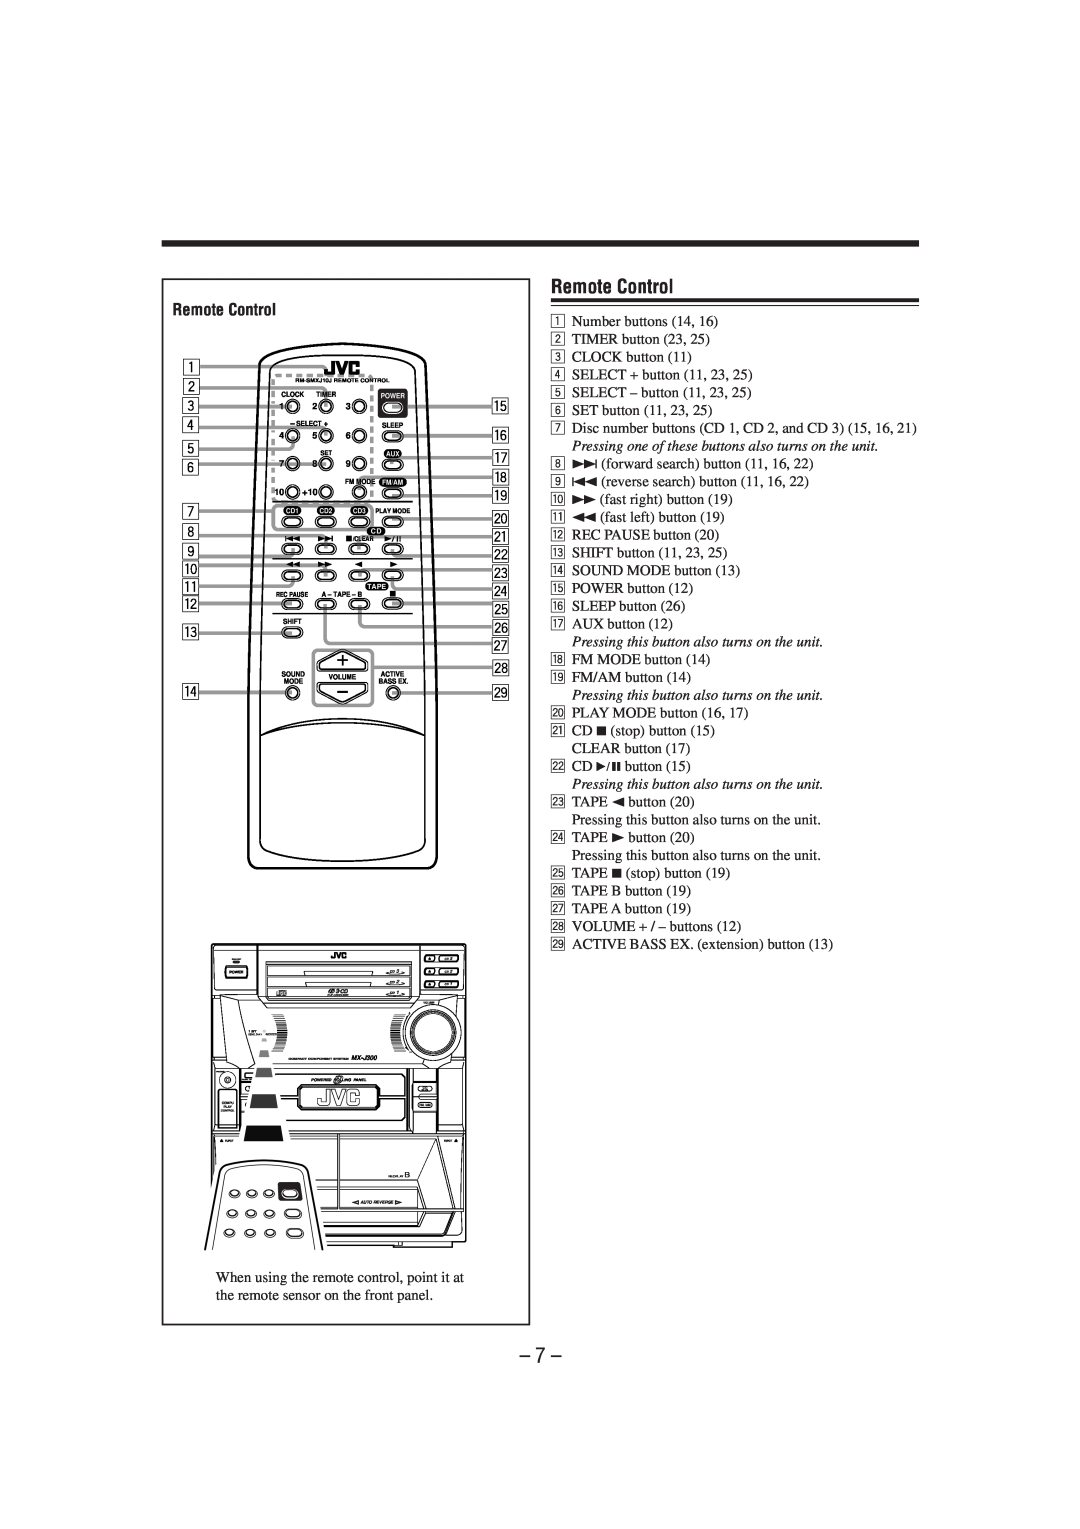 JVC MX-J300 manual Remote Control 